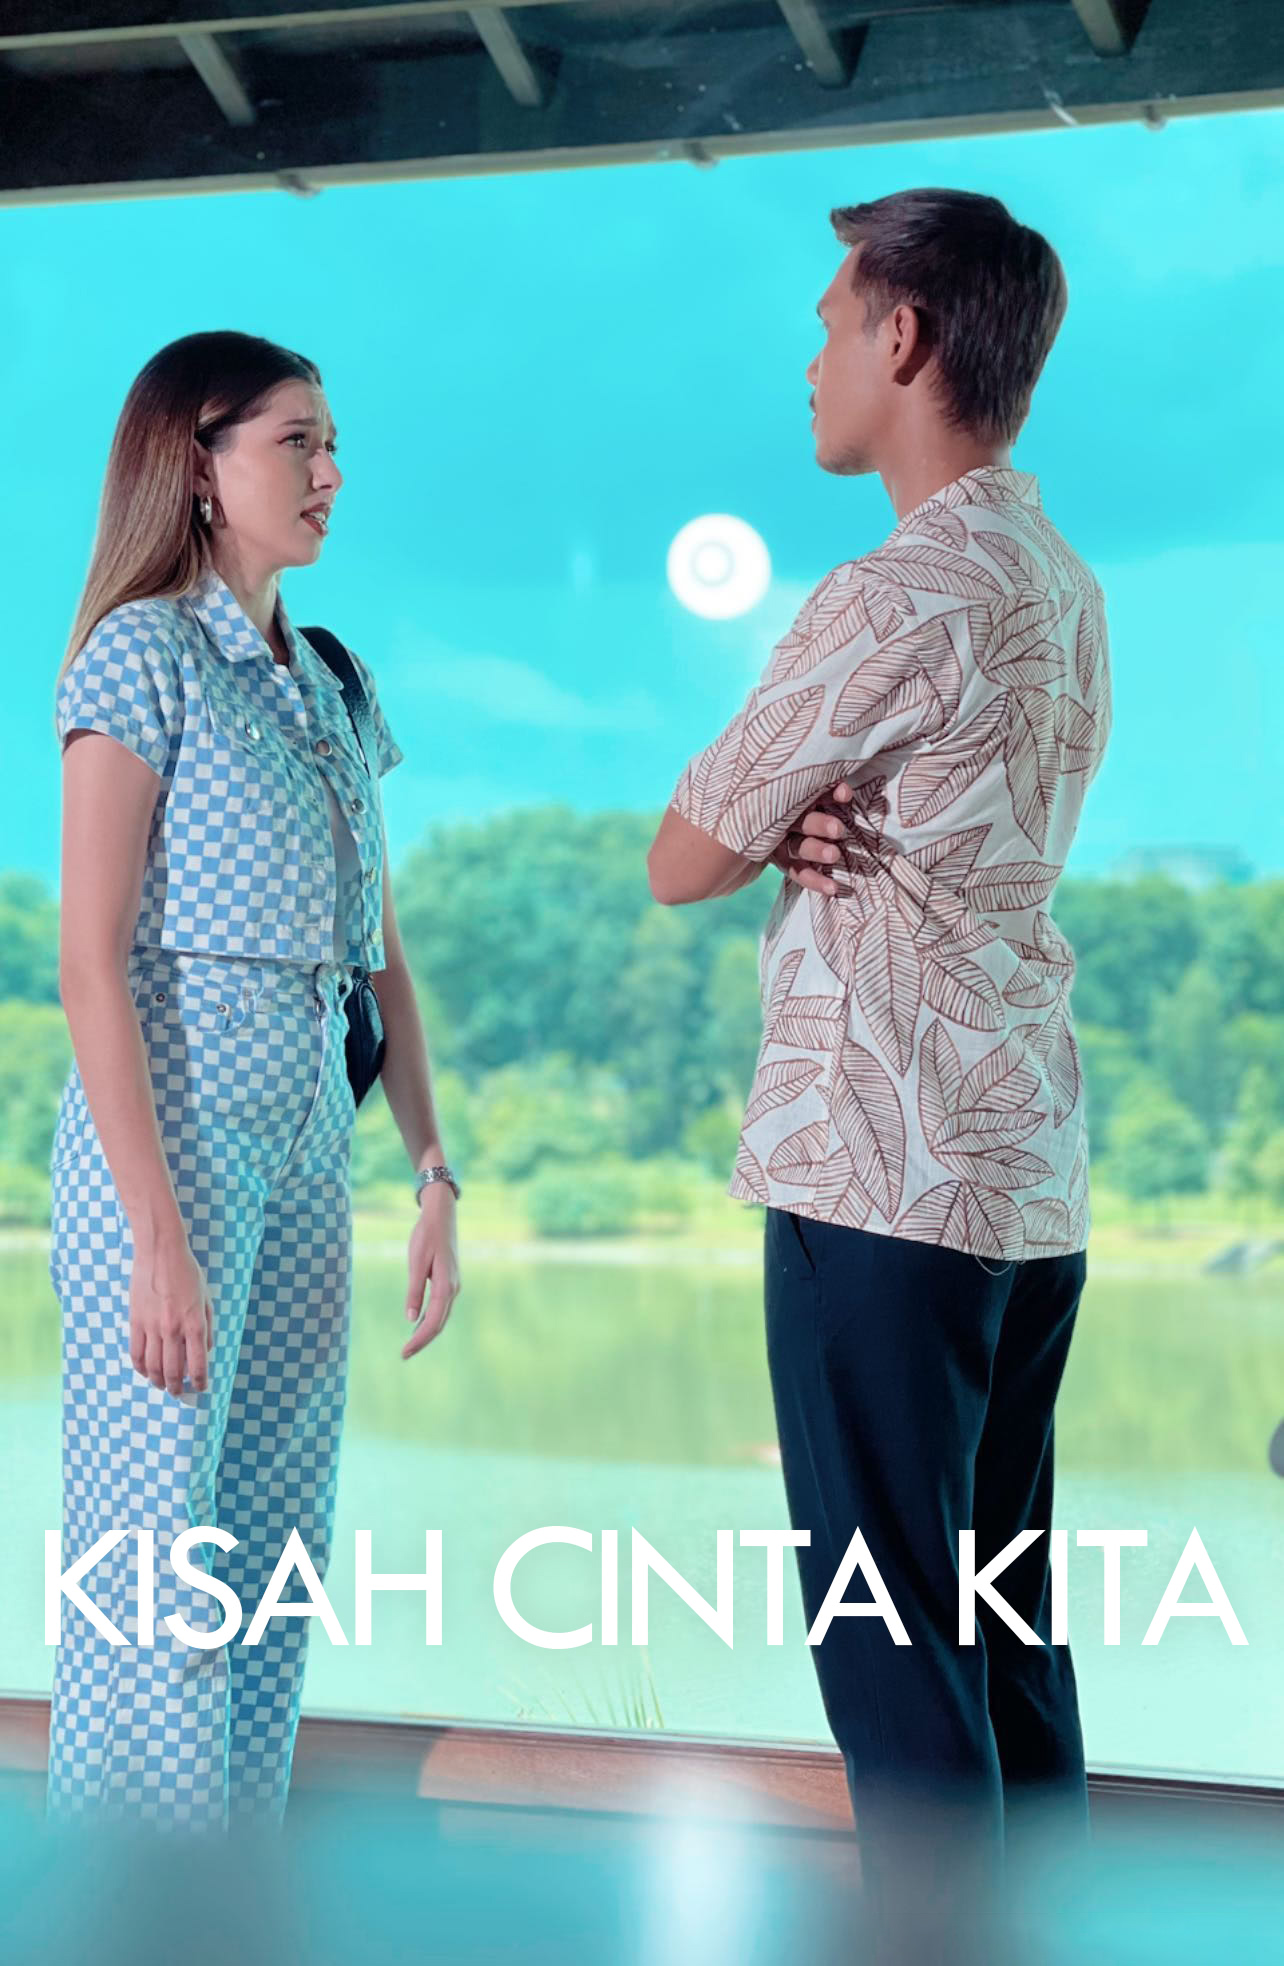 Drama Kisah Cinta Kita Tv3 Myinfotaip